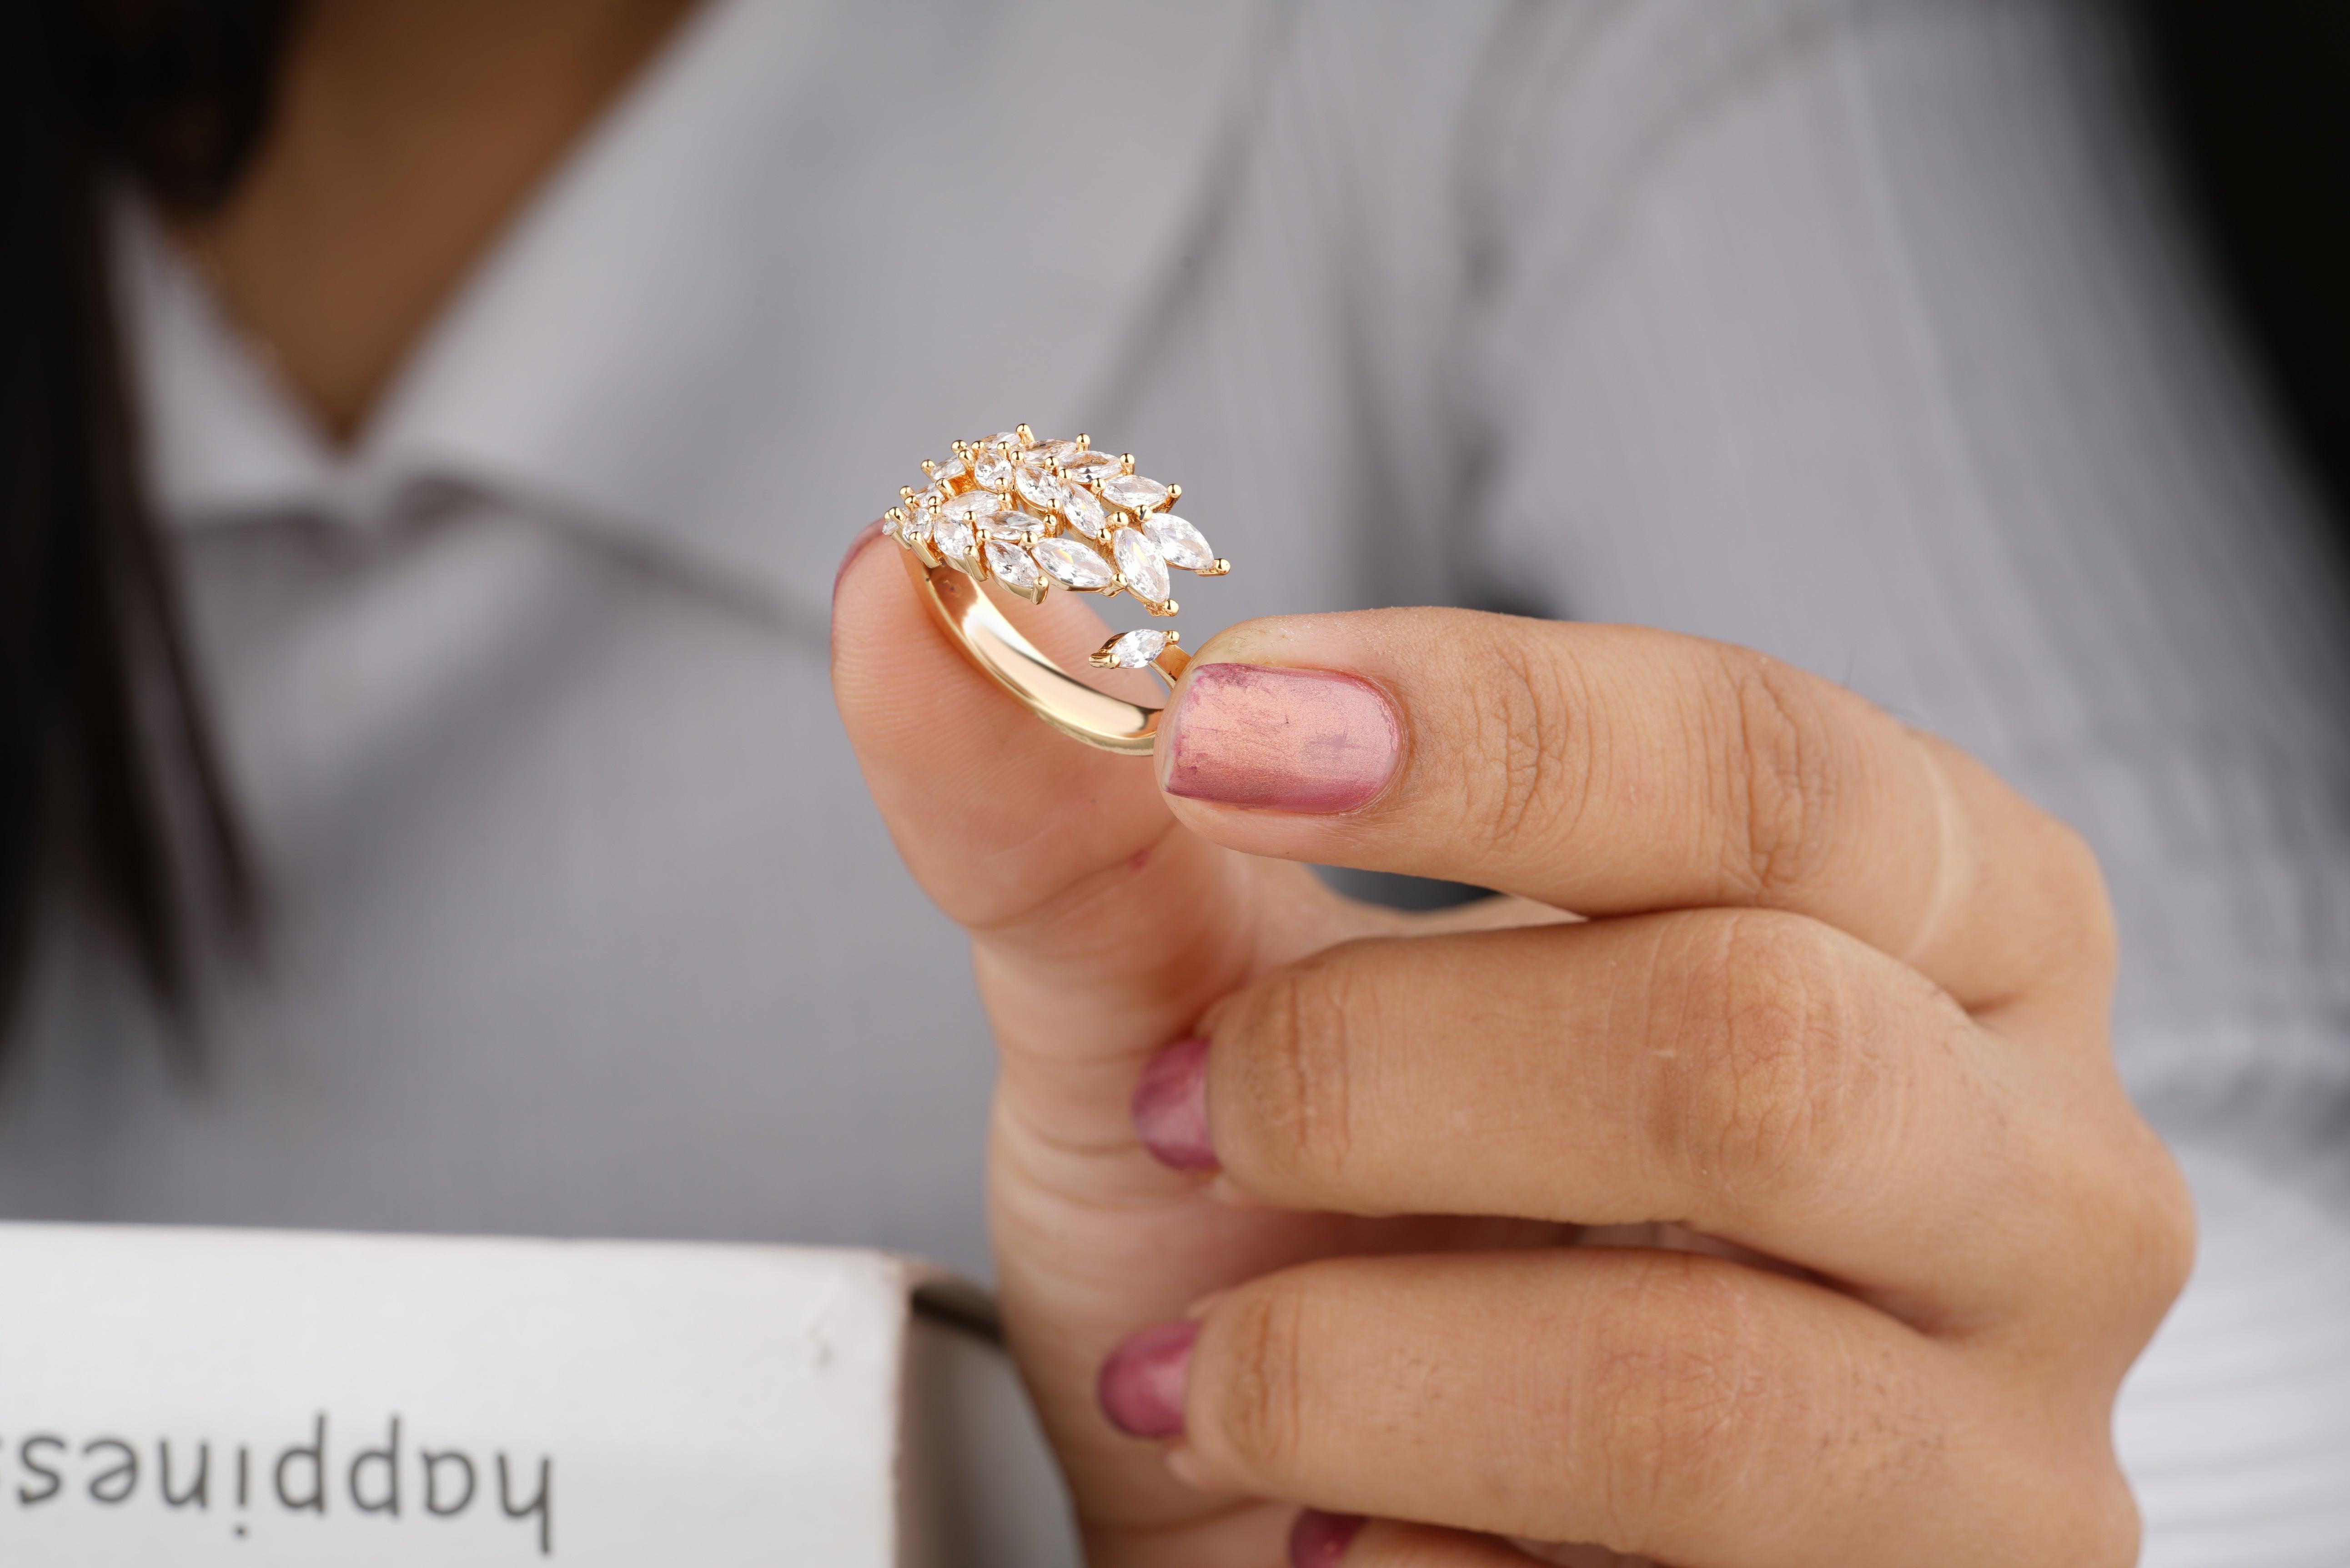 Unique Stackable Moissanite Diamond Engagement Ring - Eurekalook